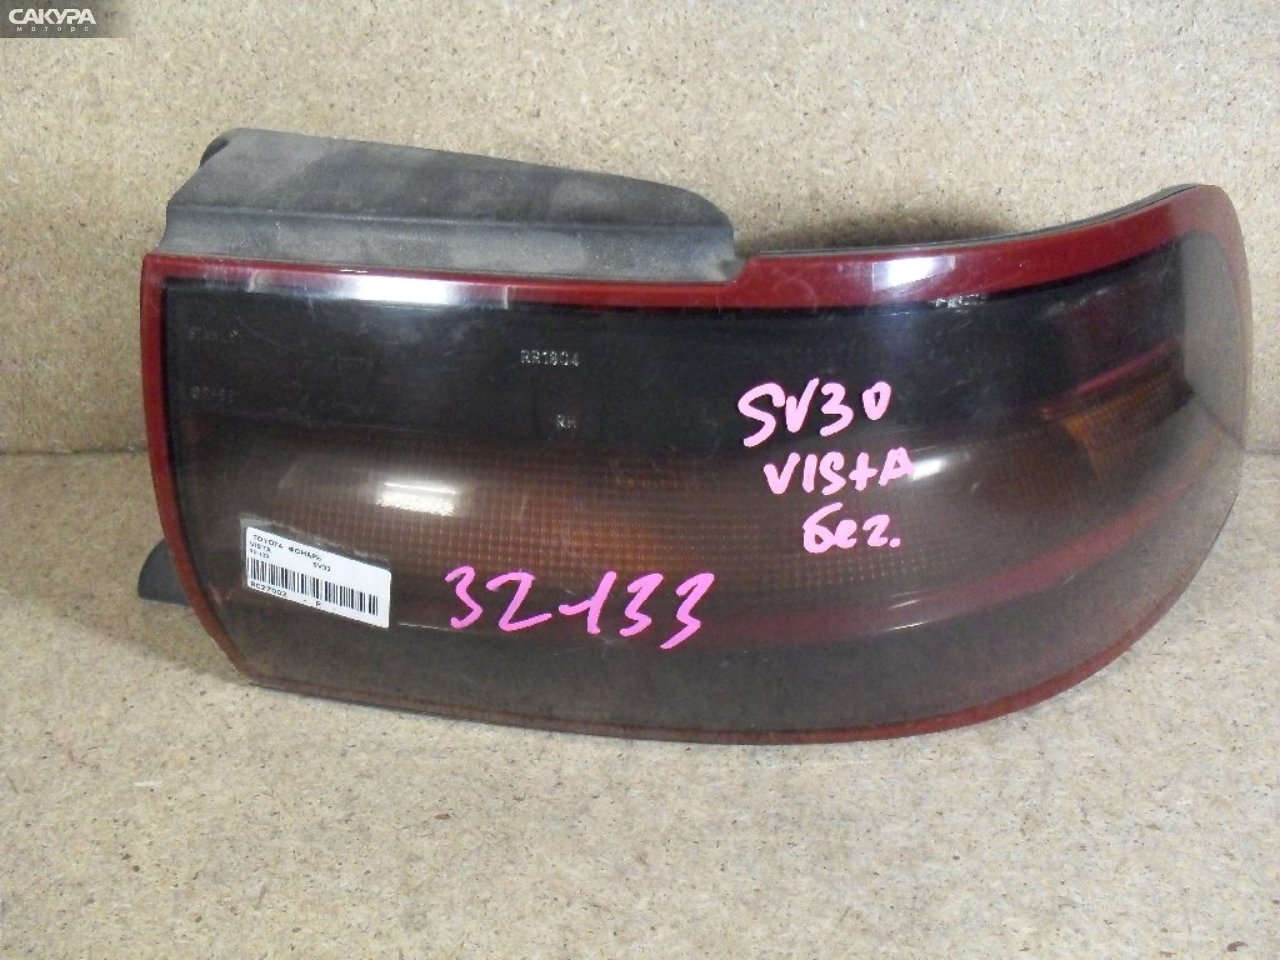 Фонарь стоп-сигнала правый Toyota Vista SV30 32-133: купить в Сакура Абакан.